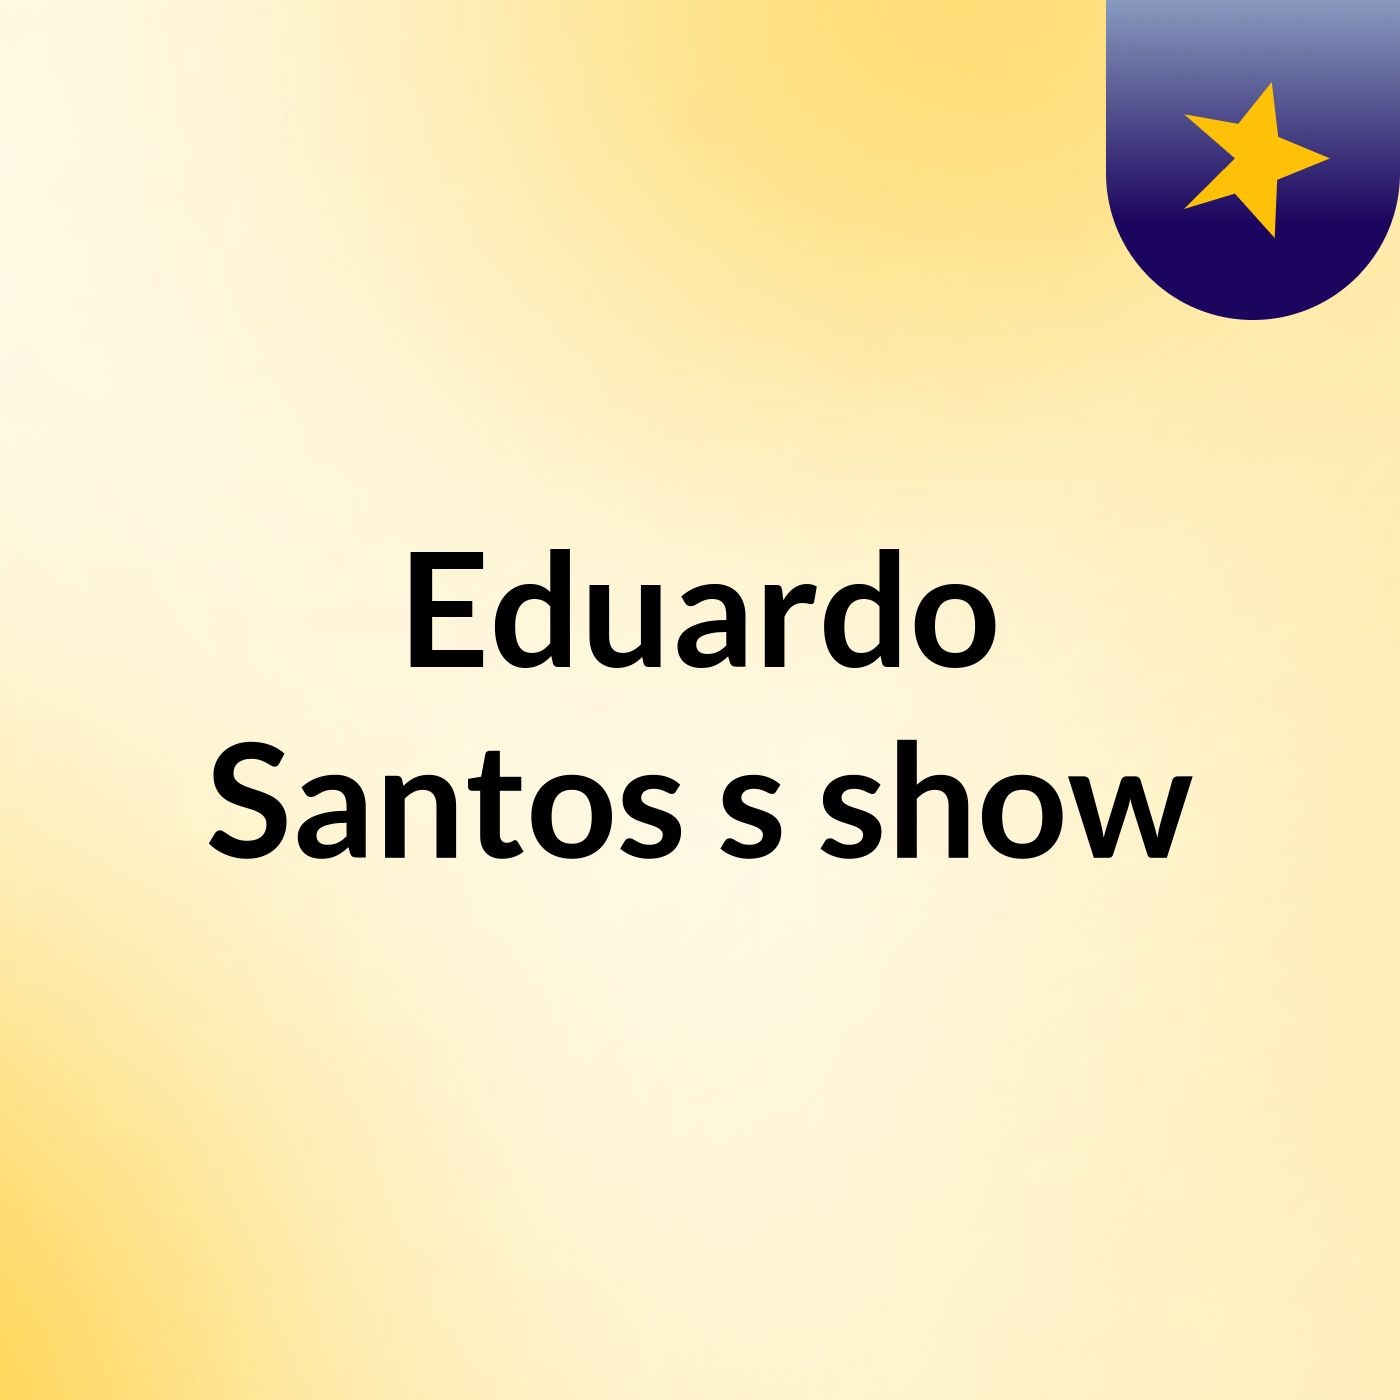 Episódio 23 - Eduardo Santos's show